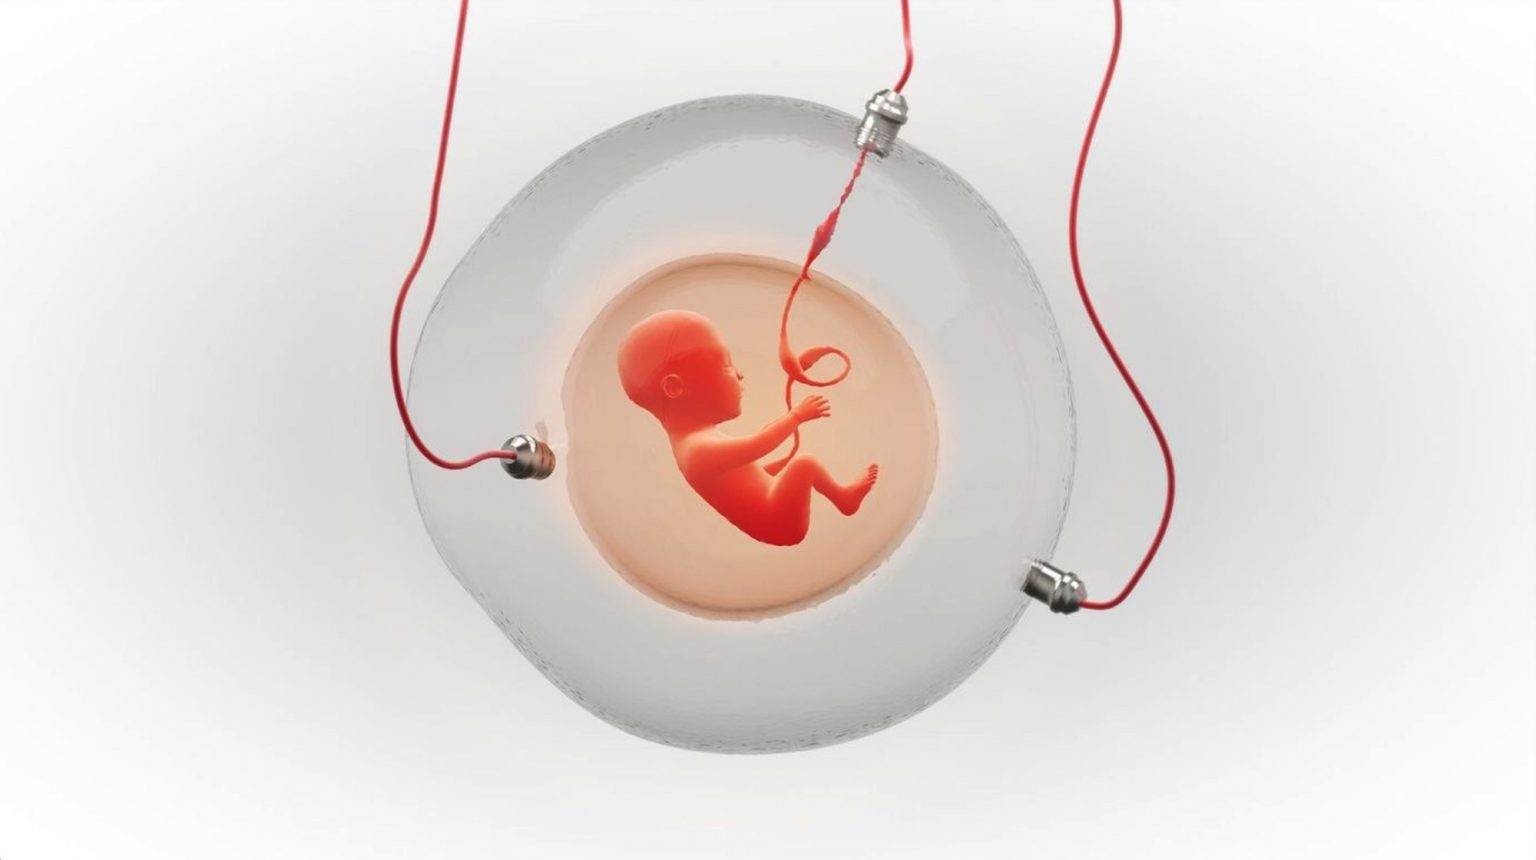 Tạo ra tử cung nhân tạo để phụ nữ không cần mang thai?